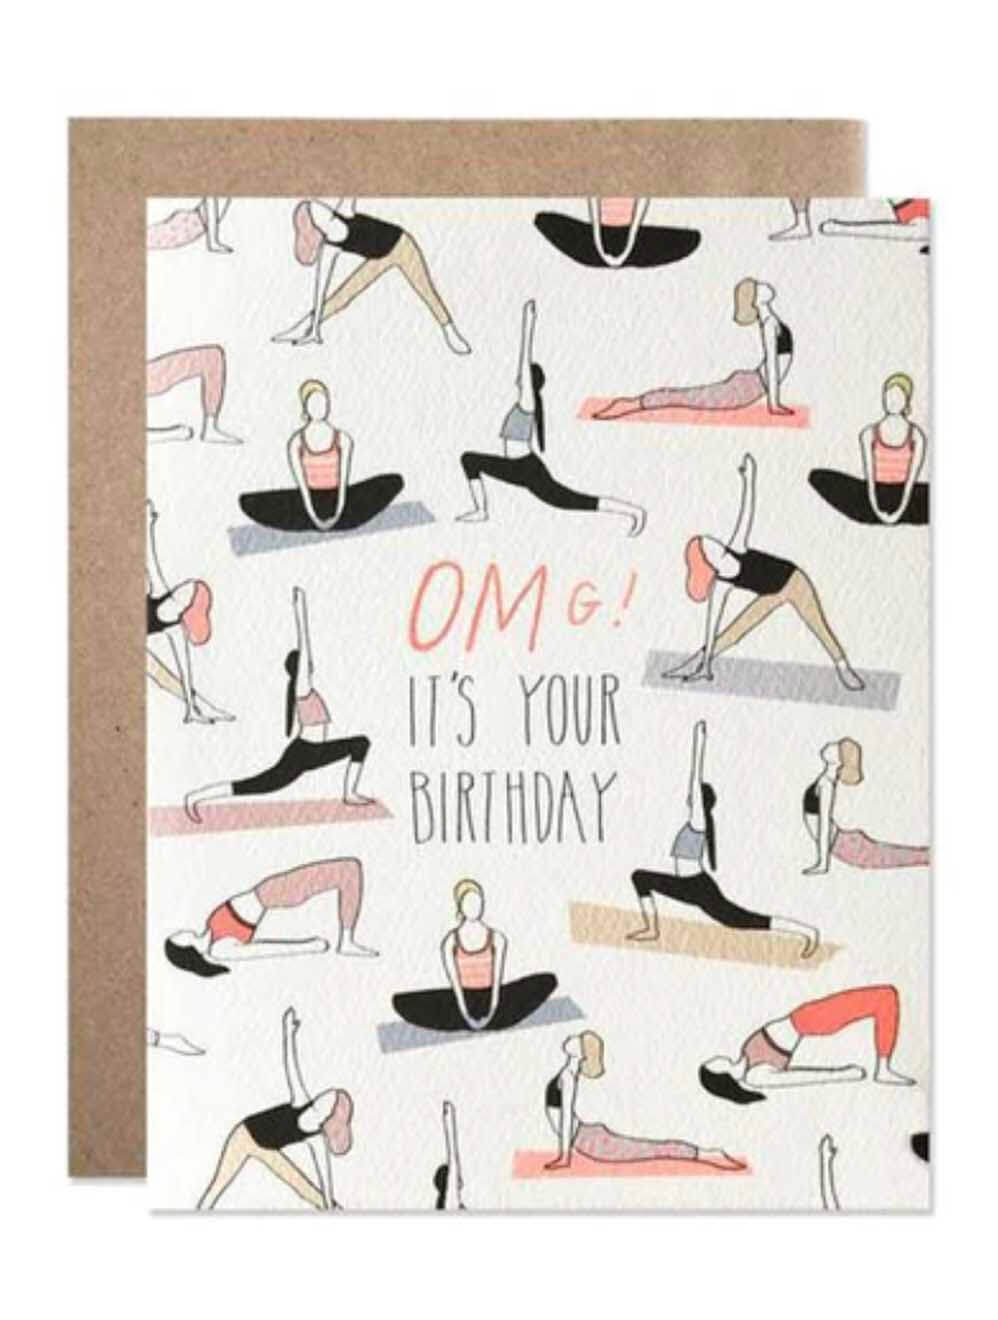 OMG! Yoga Birthday Card